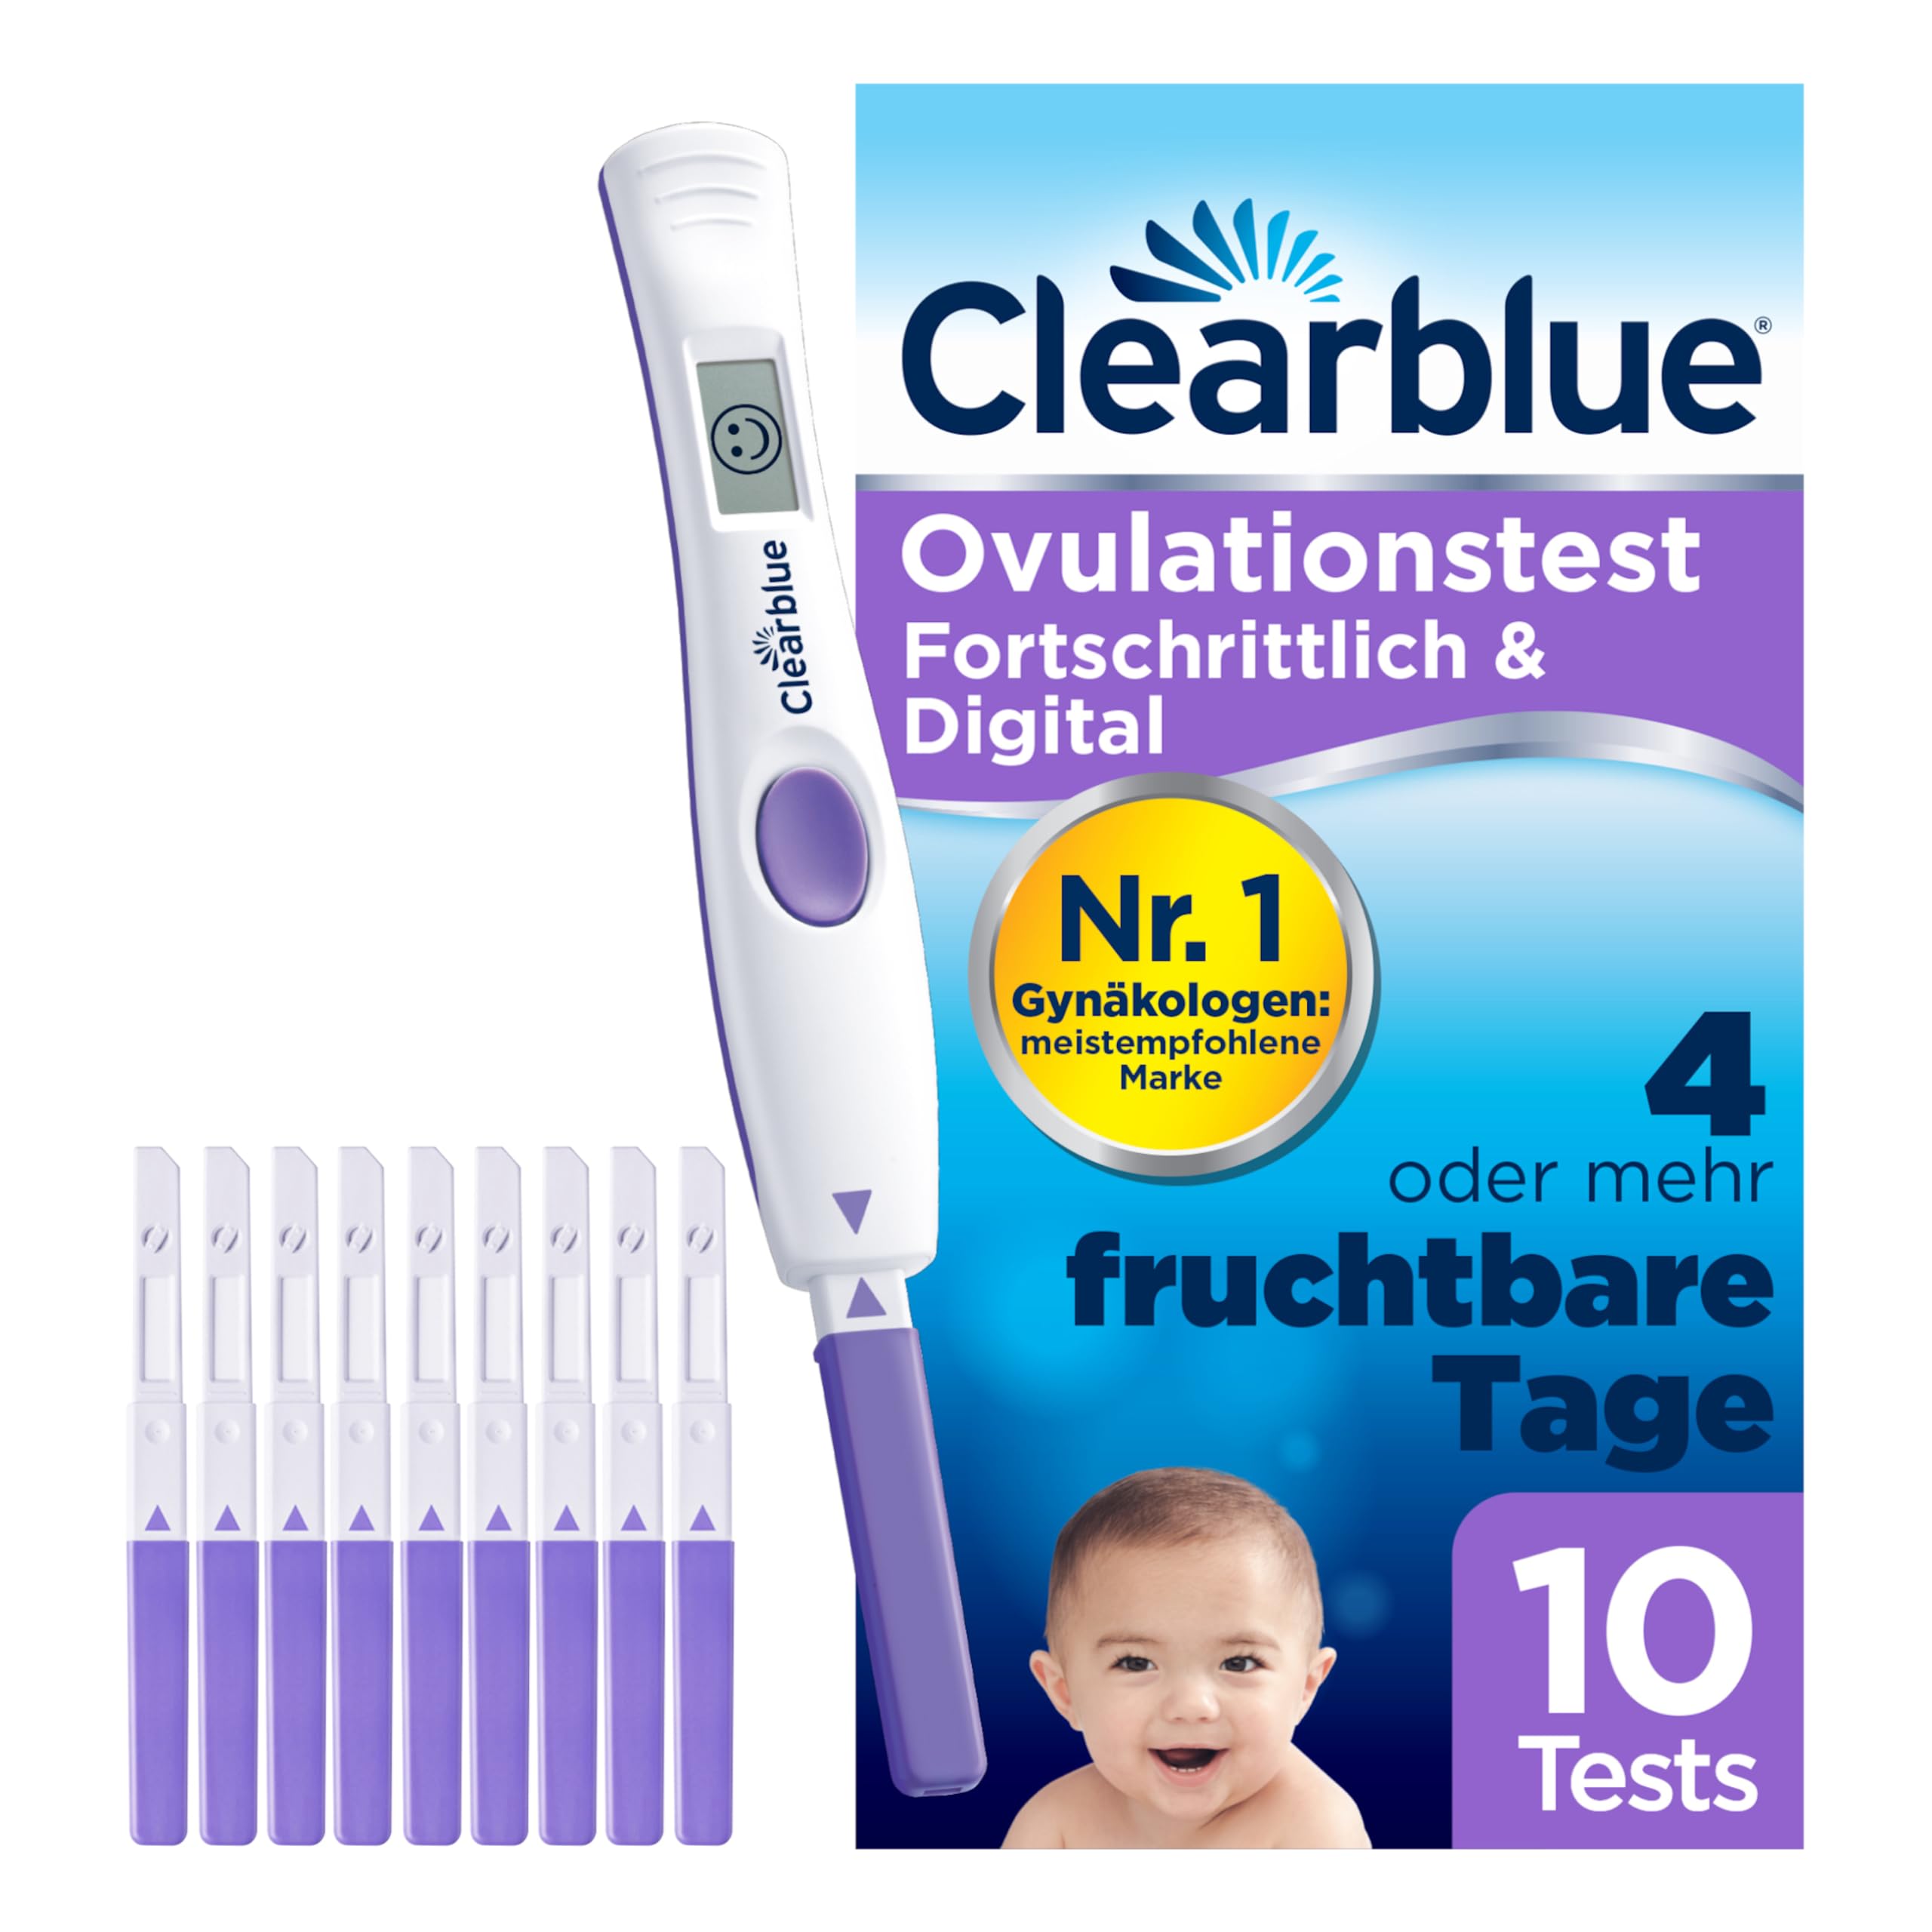 Clearblue Kinderwunsch Ovulationstest Kit, 10 Tests + 1 digitale Testhalterung, Fruchtbarkeitstest für Frauen / Eisprung, Fortschrittlich & Digital (testet 2 Hormone), schneller schwanger werden